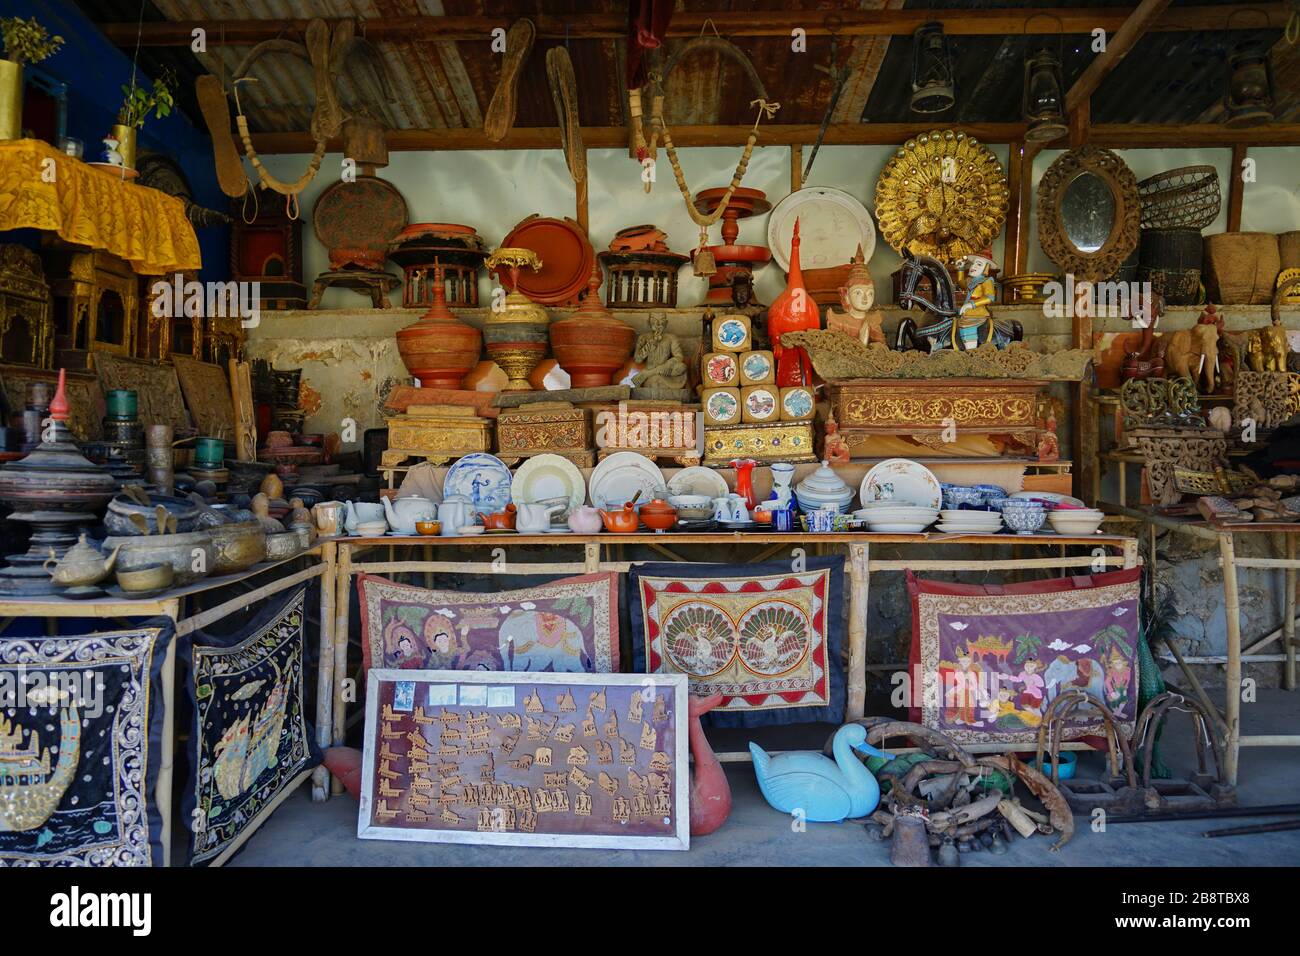 Souvenirladen im überdachten Aufgang zu dem In-Dein-Pagodenwald, Shwe Inn Thein-Pagode, Dorf Indein, Inle See, Shan-Staat, Myanmar Stock Photo